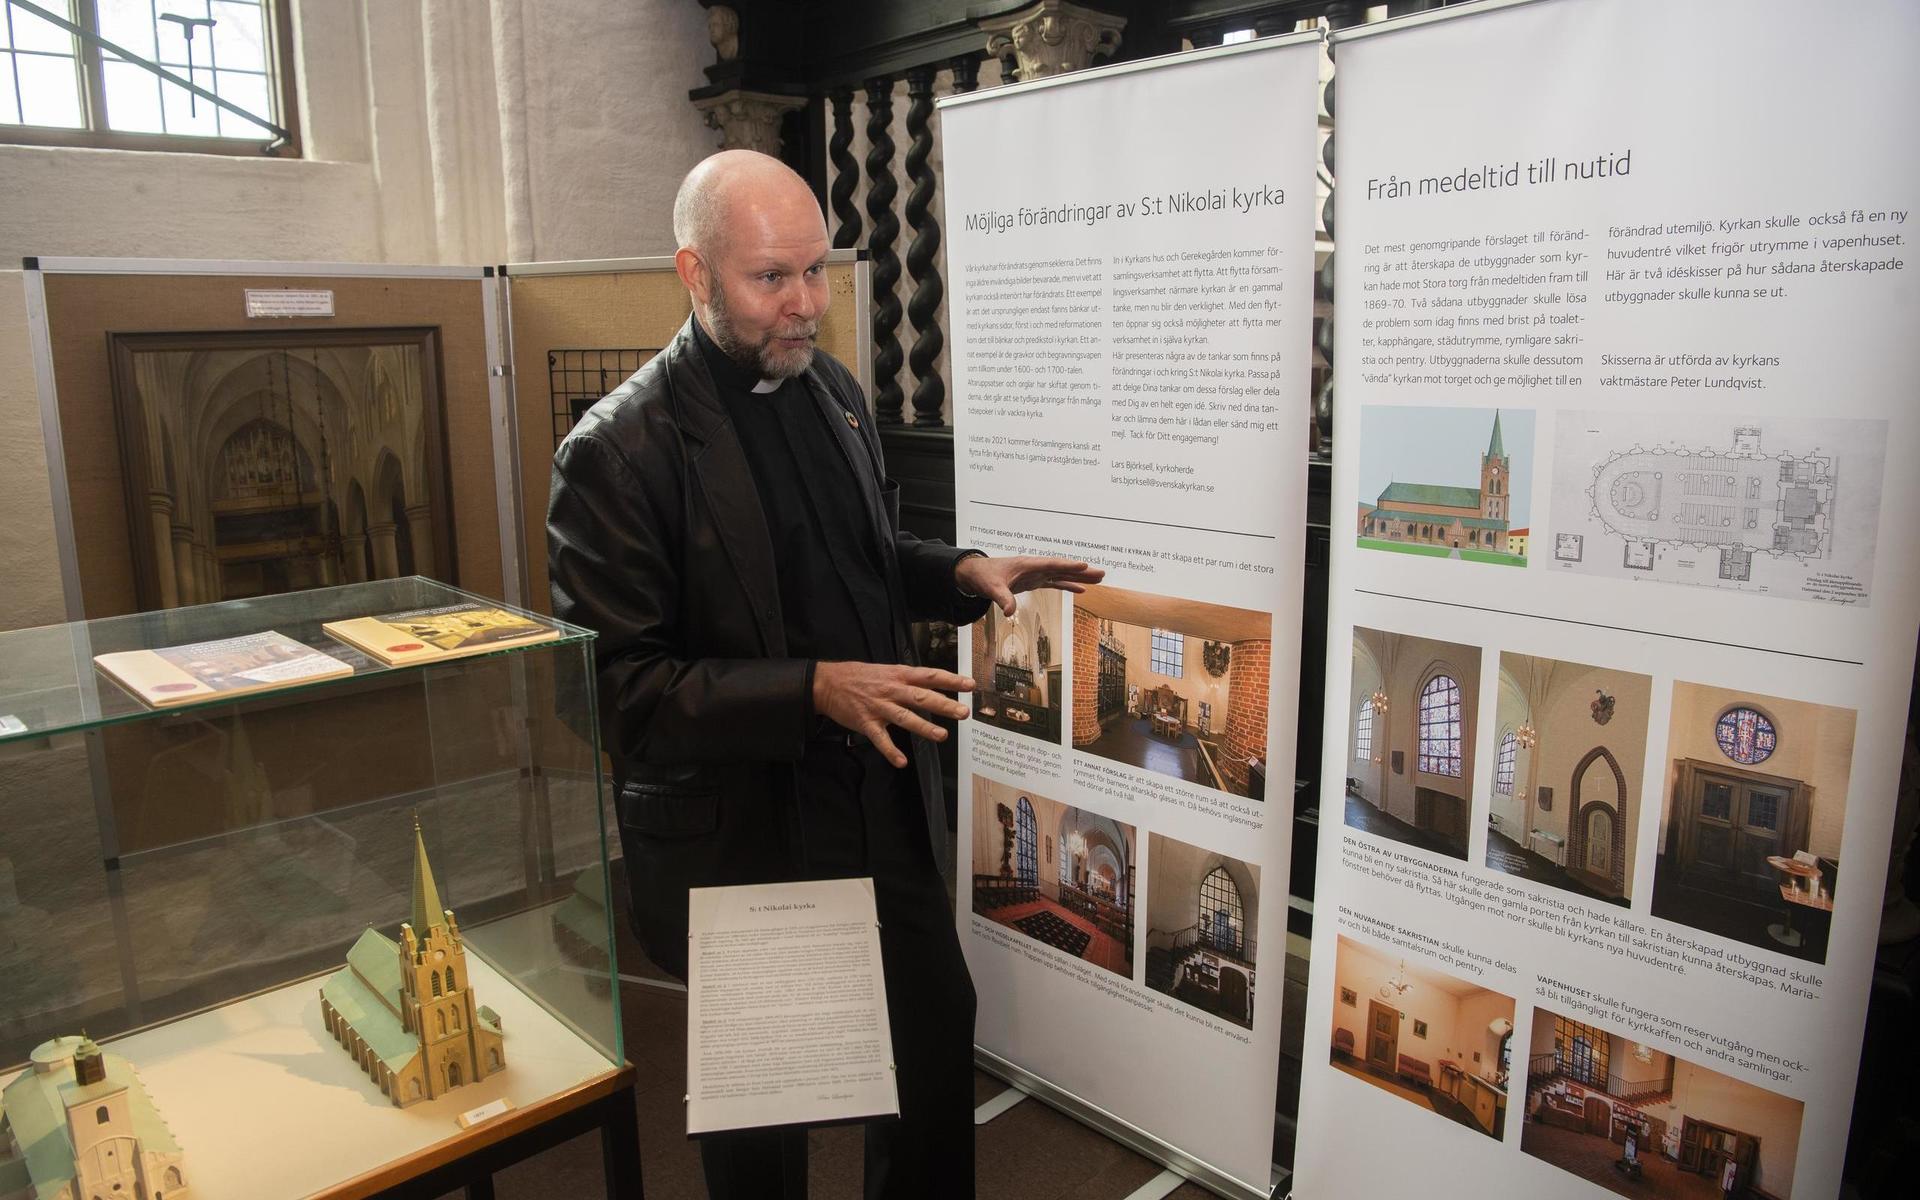 Just nu kan allmänheten kika på en utställning över kyrkans planer för S:t Nikolai och hur kyrkan förändrats från medeltid till nutid.